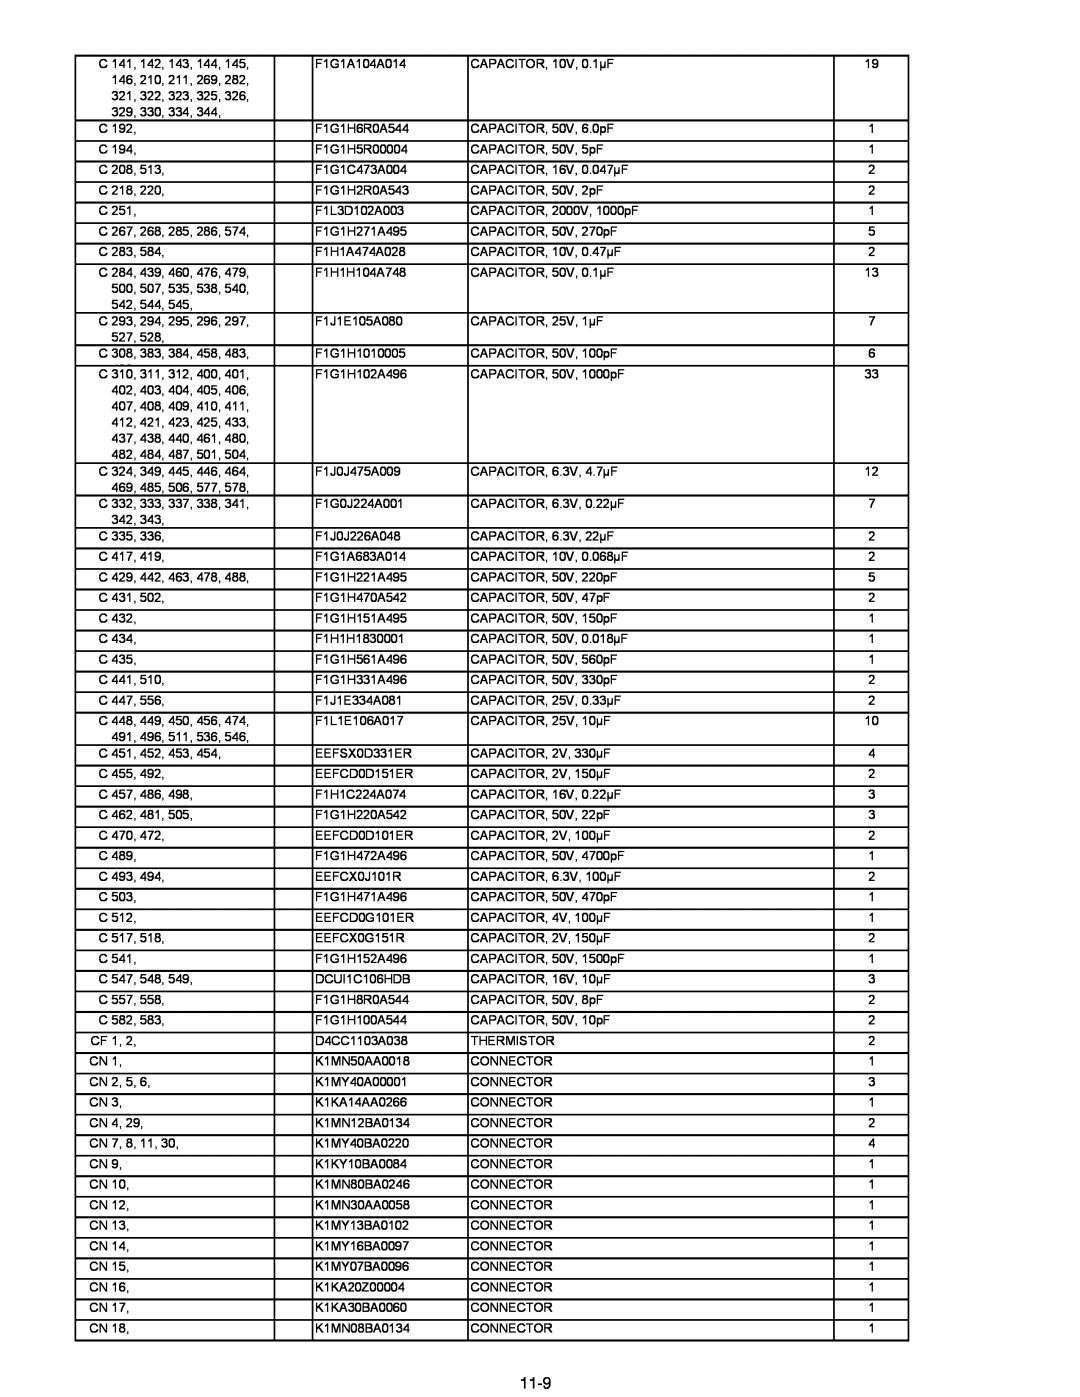 Matsushita CF-30 service manual 11-9, F1G1A104A014 